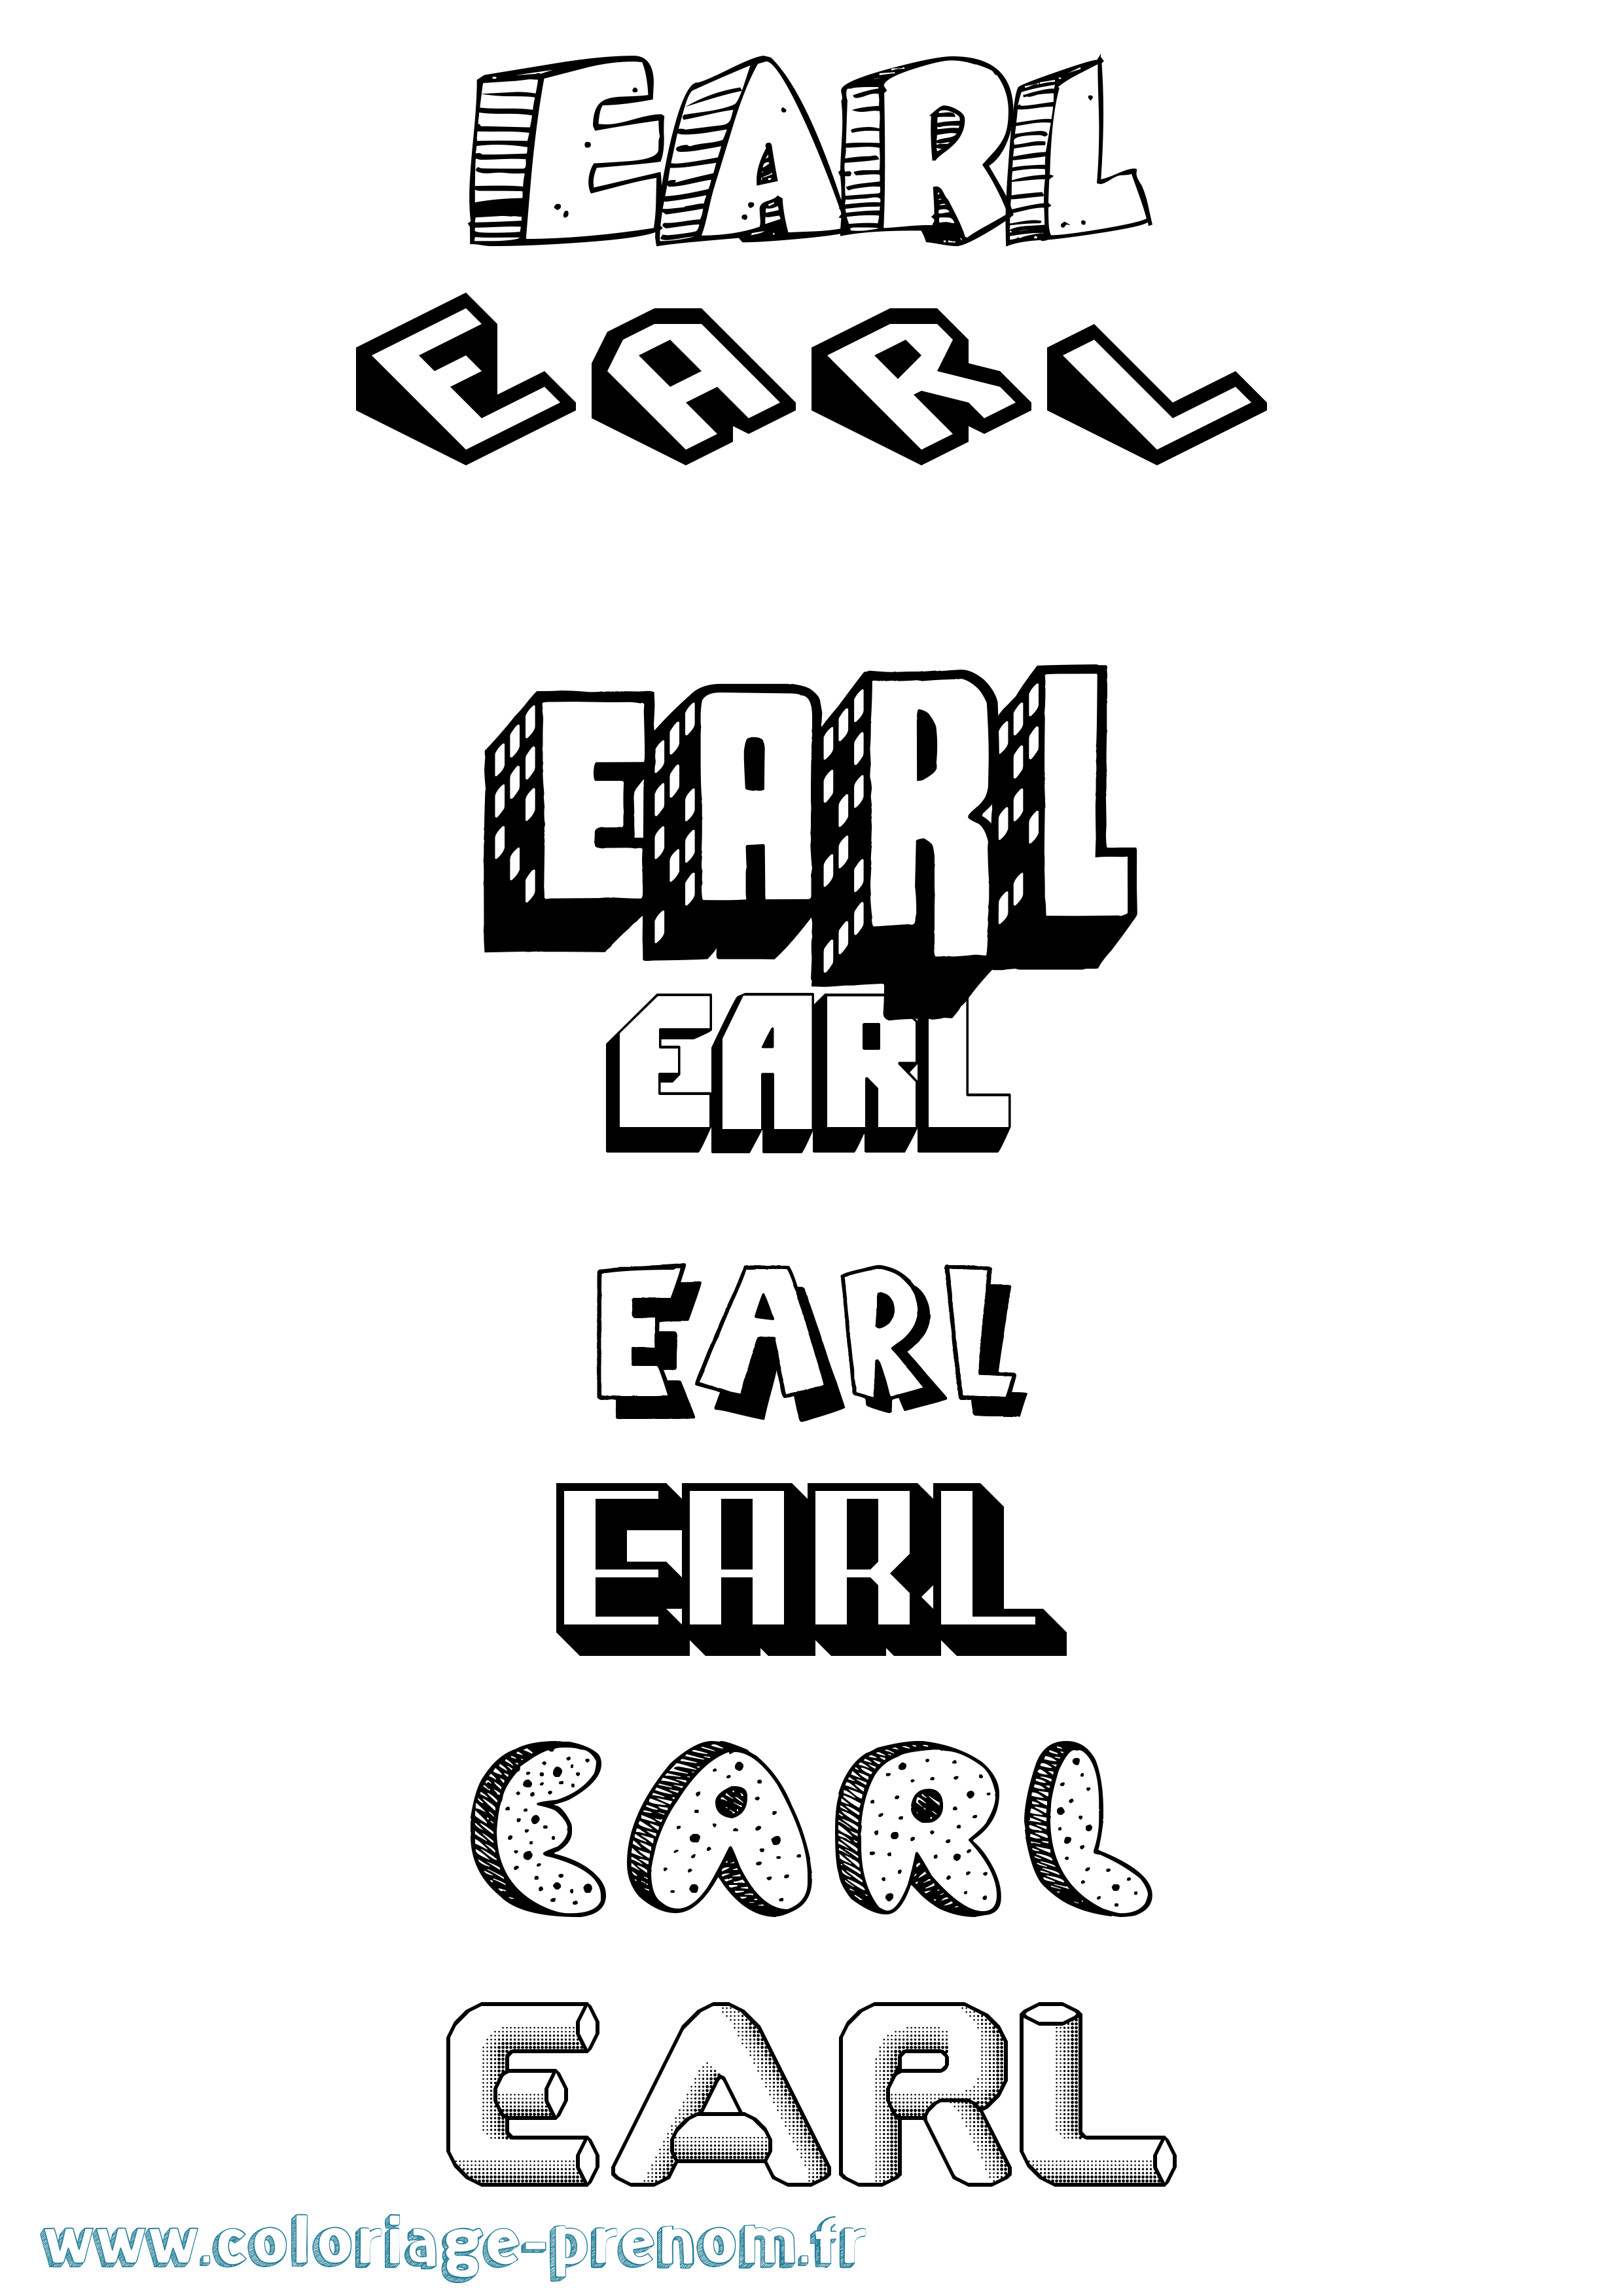 Coloriage prénom Earl Effet 3D